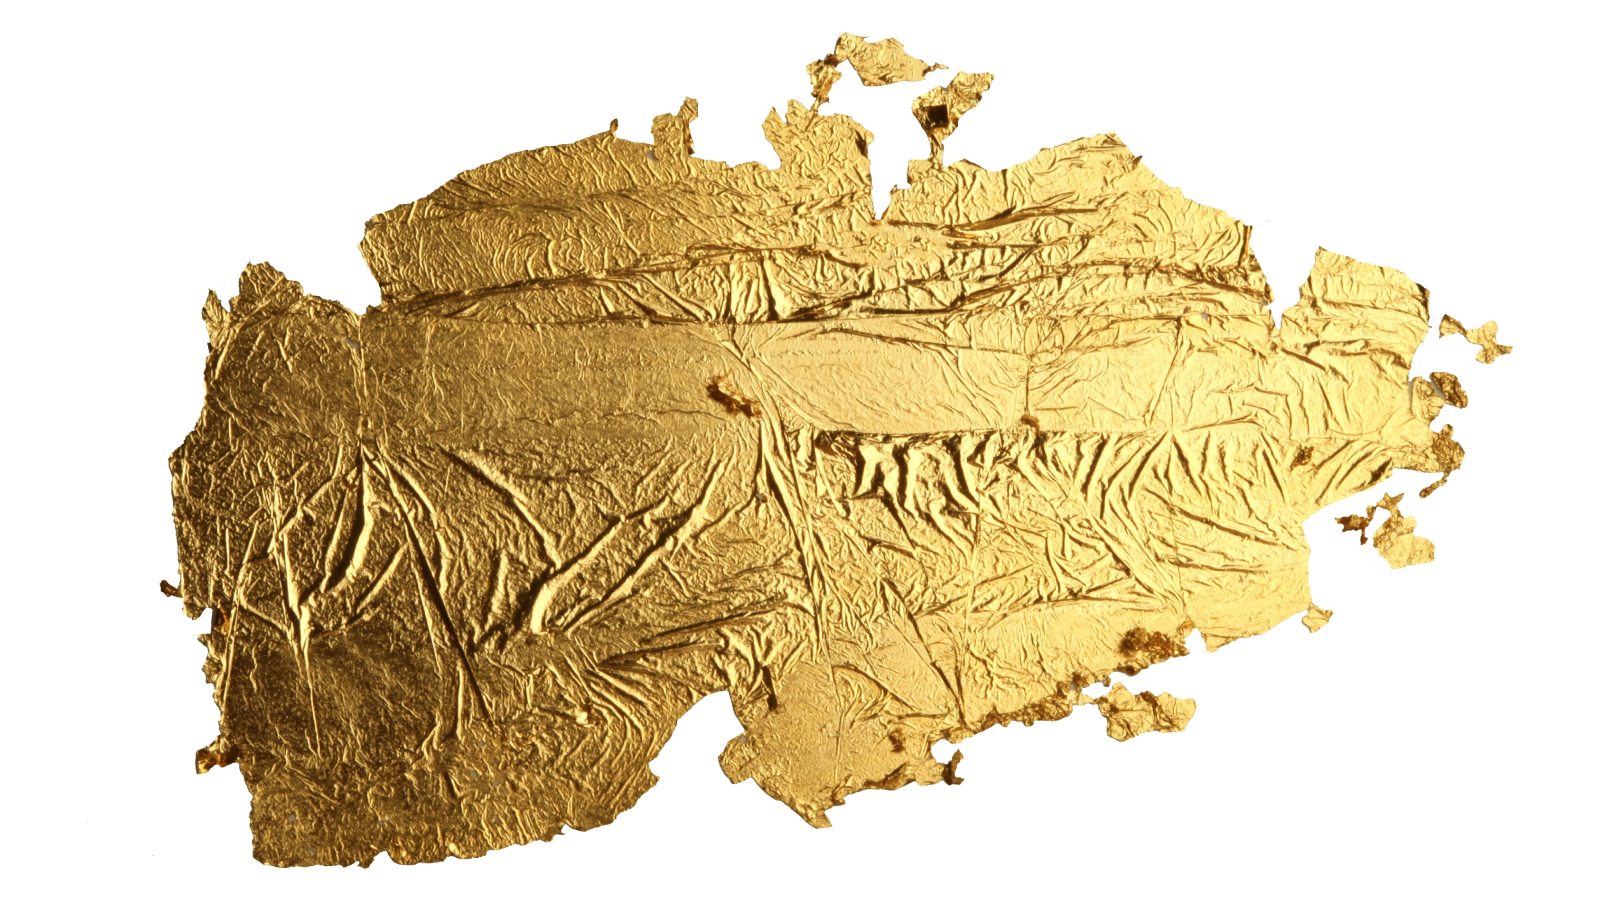 La foglia d’oro più sottile del mondo, soprannominata “goldene”, ha uno spessore di solo 1 atomo